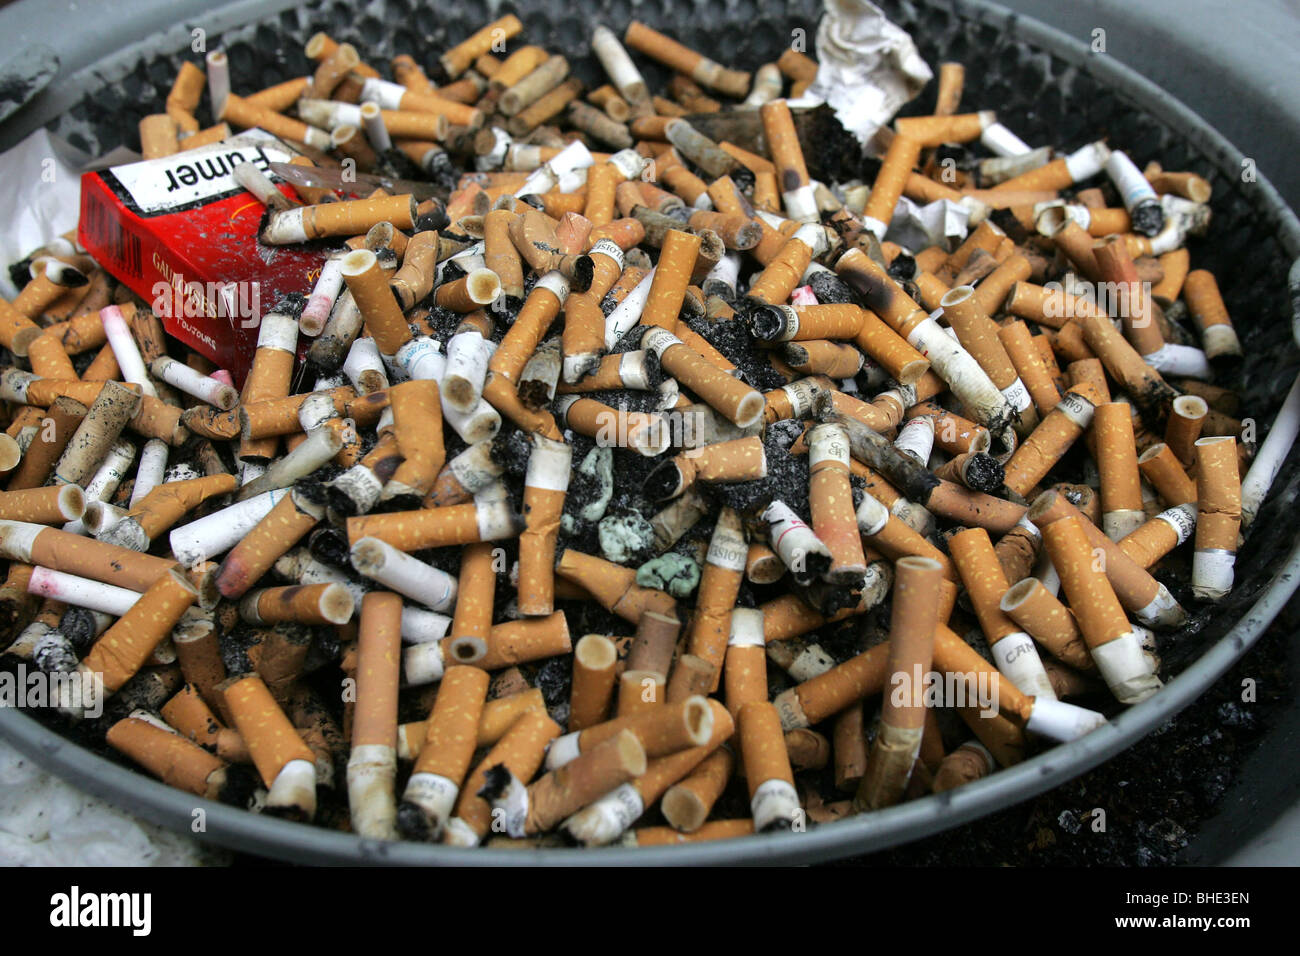 großer Aschenbecher voller viele Zigarettenkippen Stockfotografie